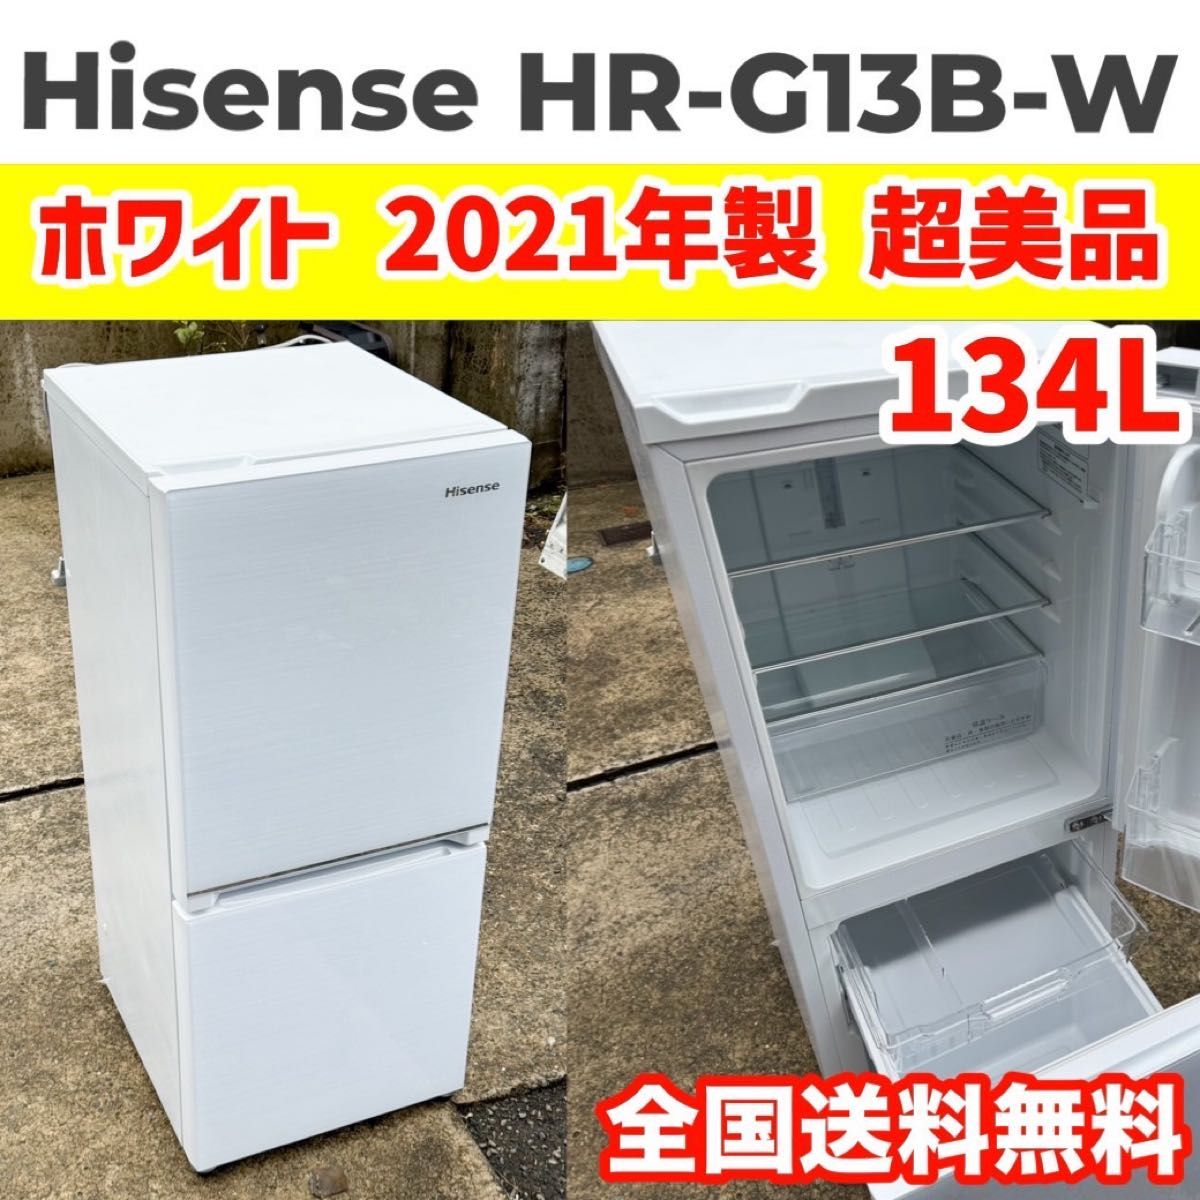 Hisense ハイセンス HR-G13B-W ホワイト ガラストップ ガラス棚 シンプル 一人暮らし 2ドア 小型 冷蔵庫